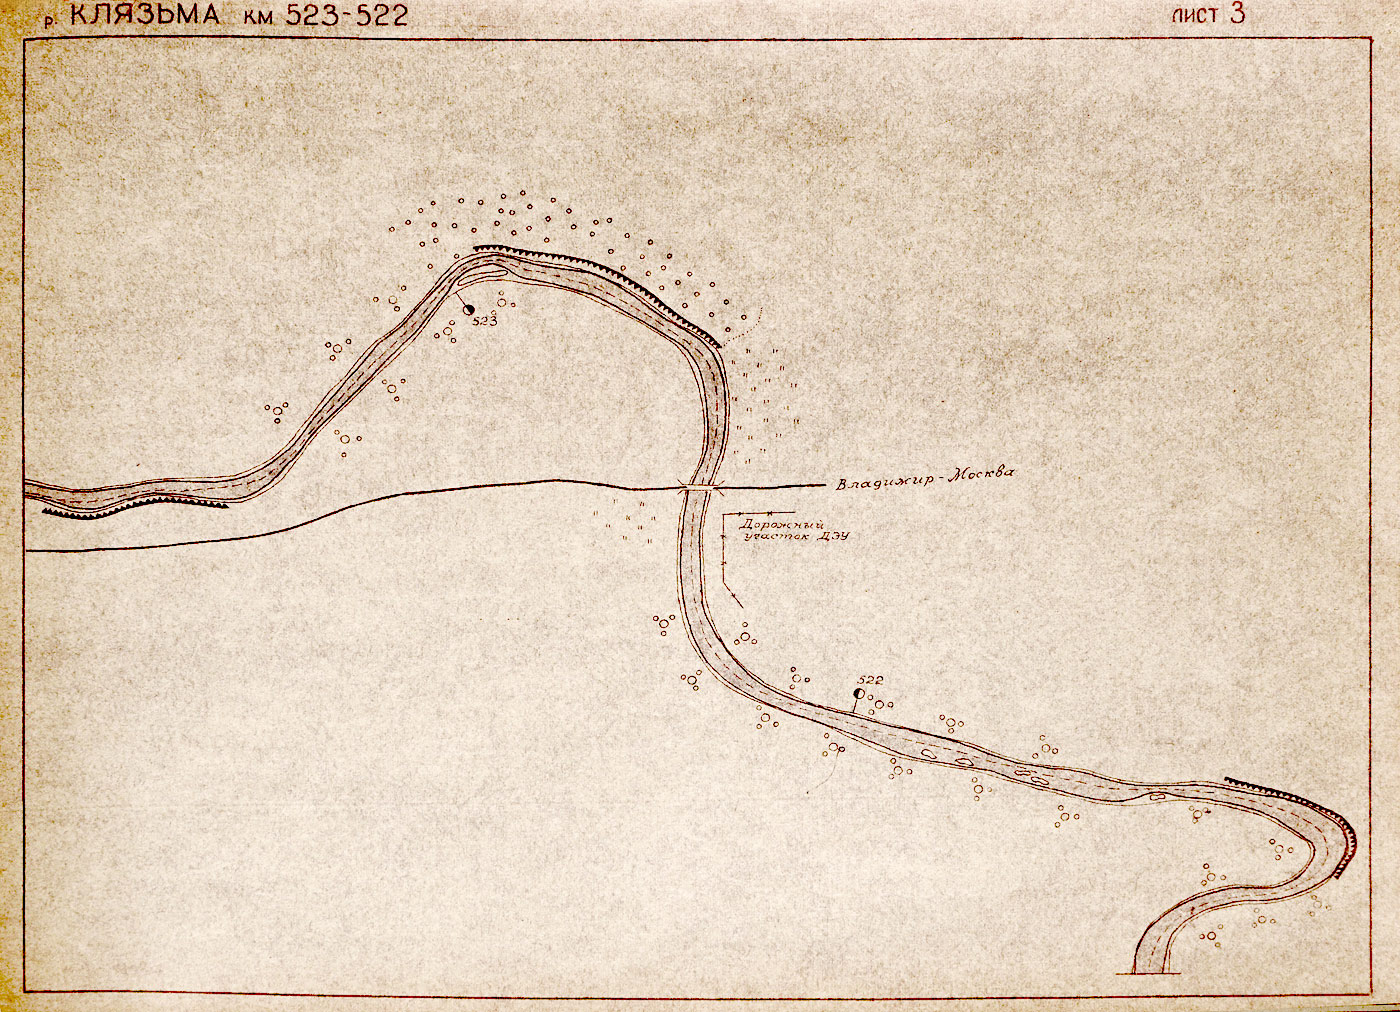 Река Клязьма схема течения на карте